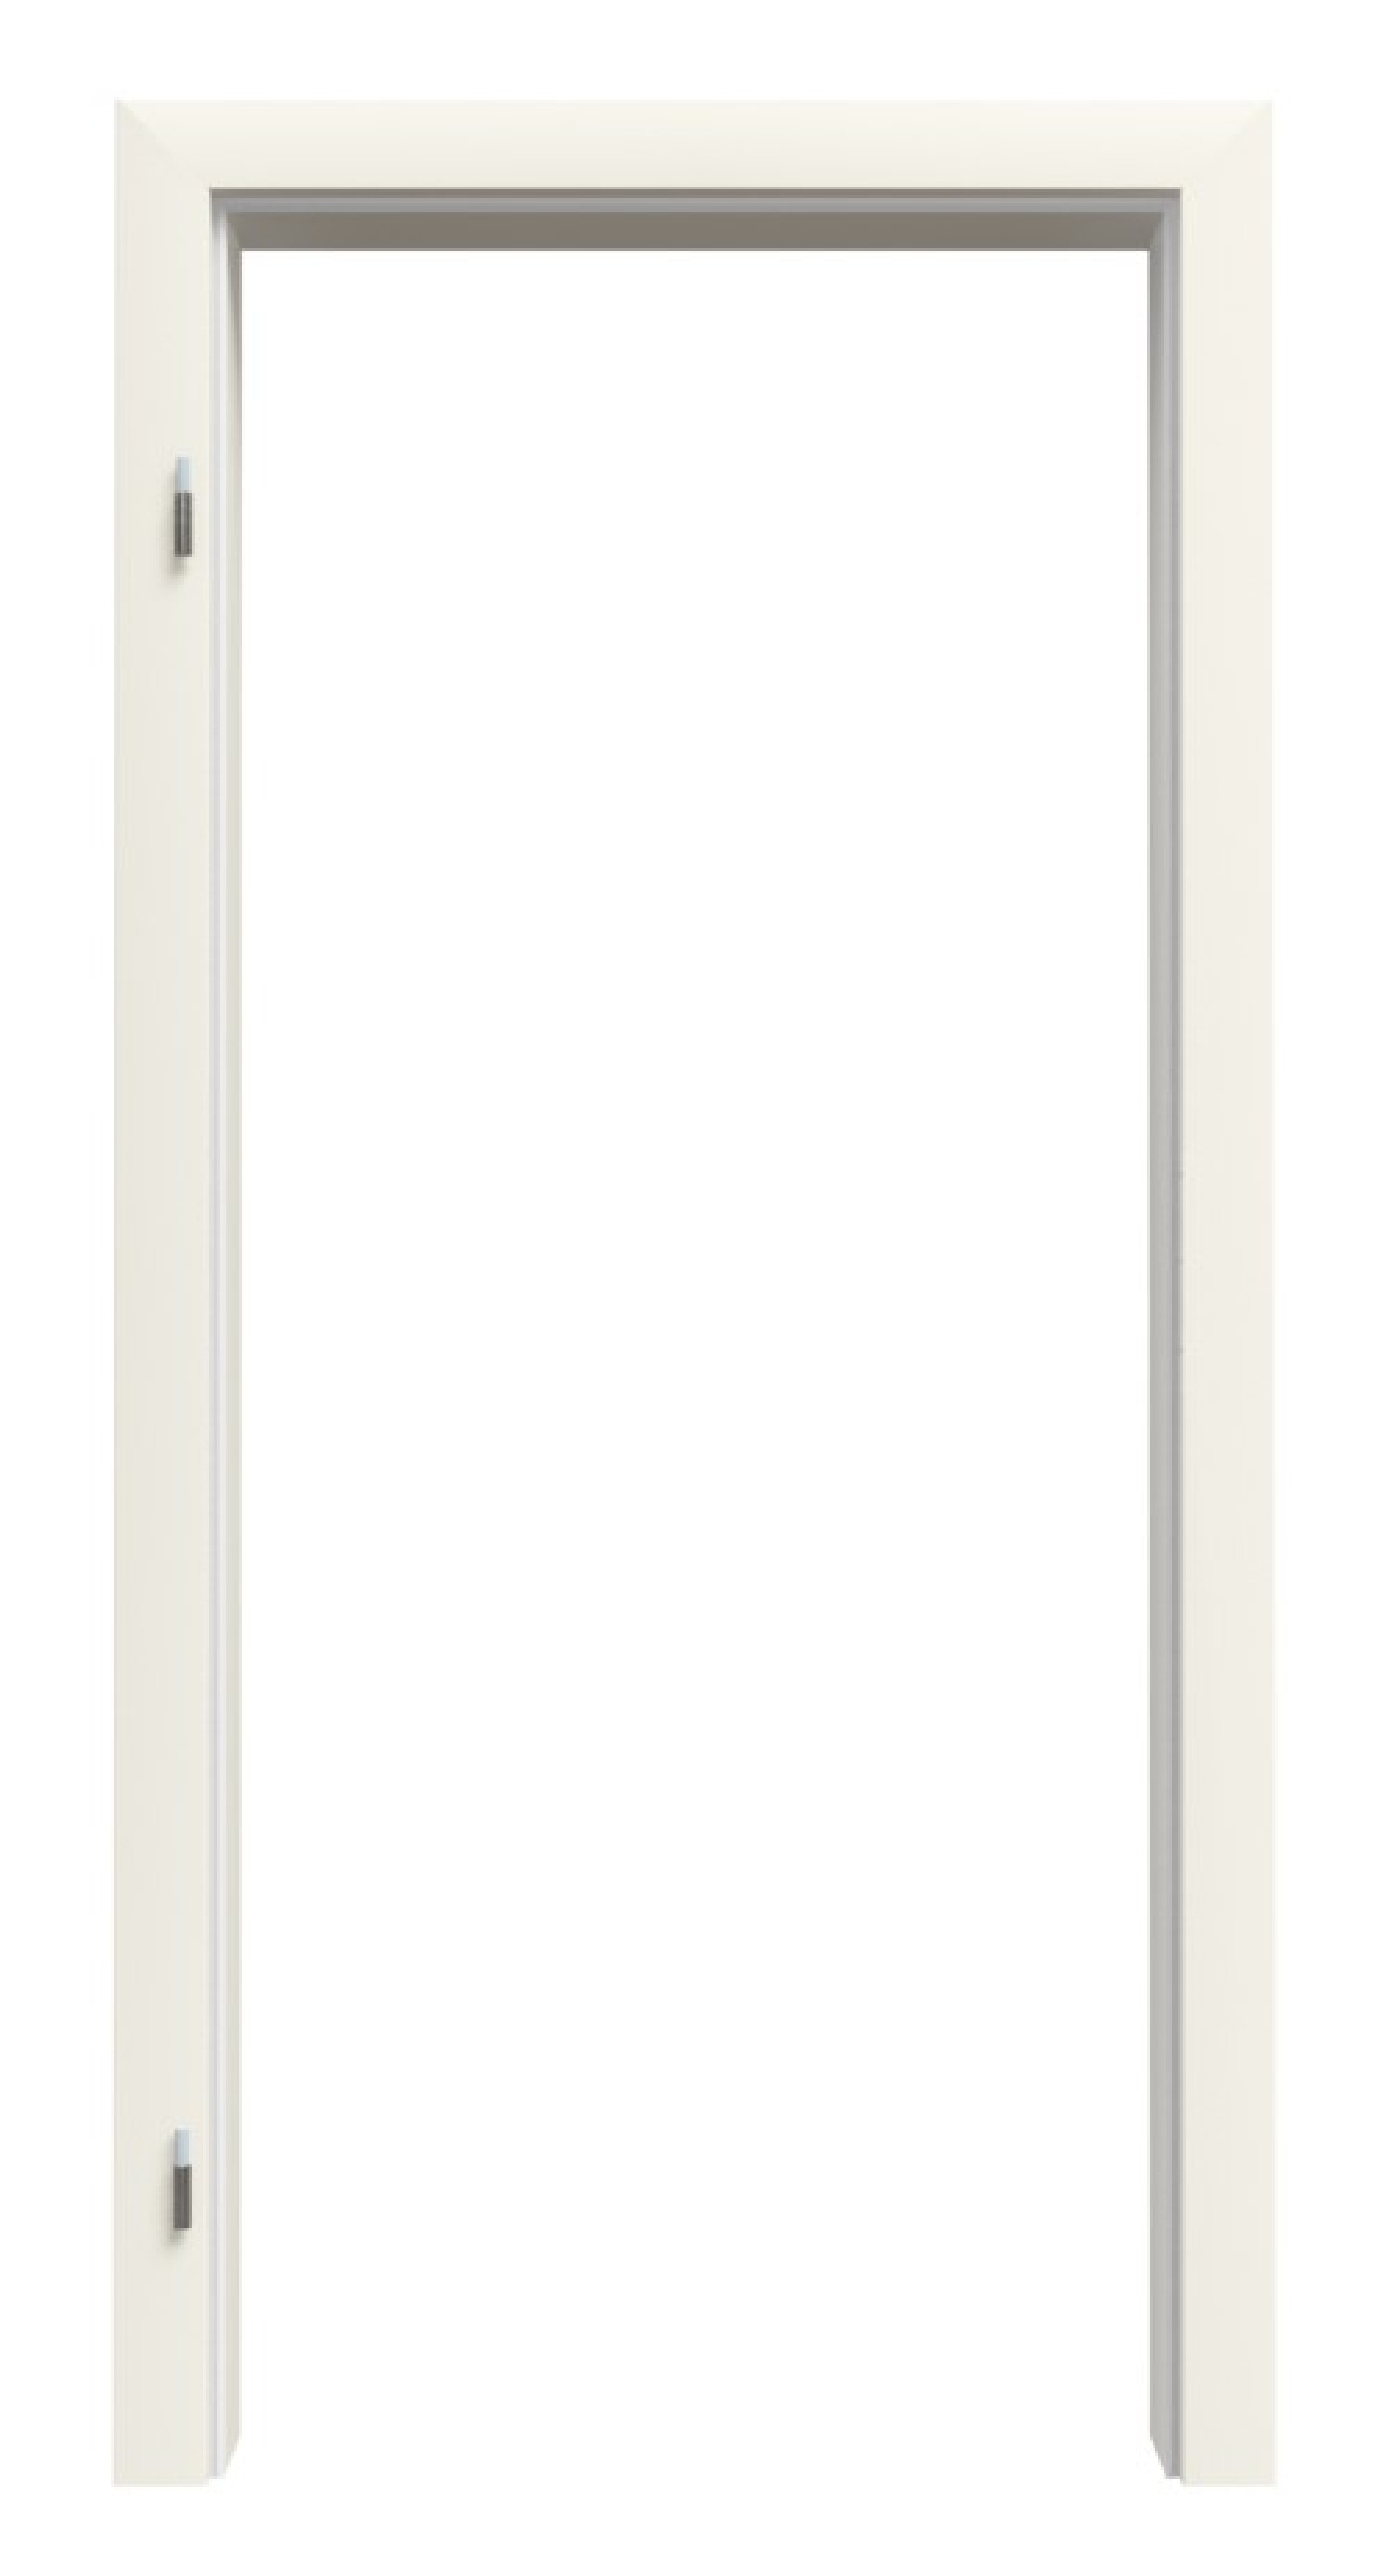 Bild von Zarge für Wohnungseingangstüren Weißlack RAL 9010 Premium ZA-01 mit Rundkante